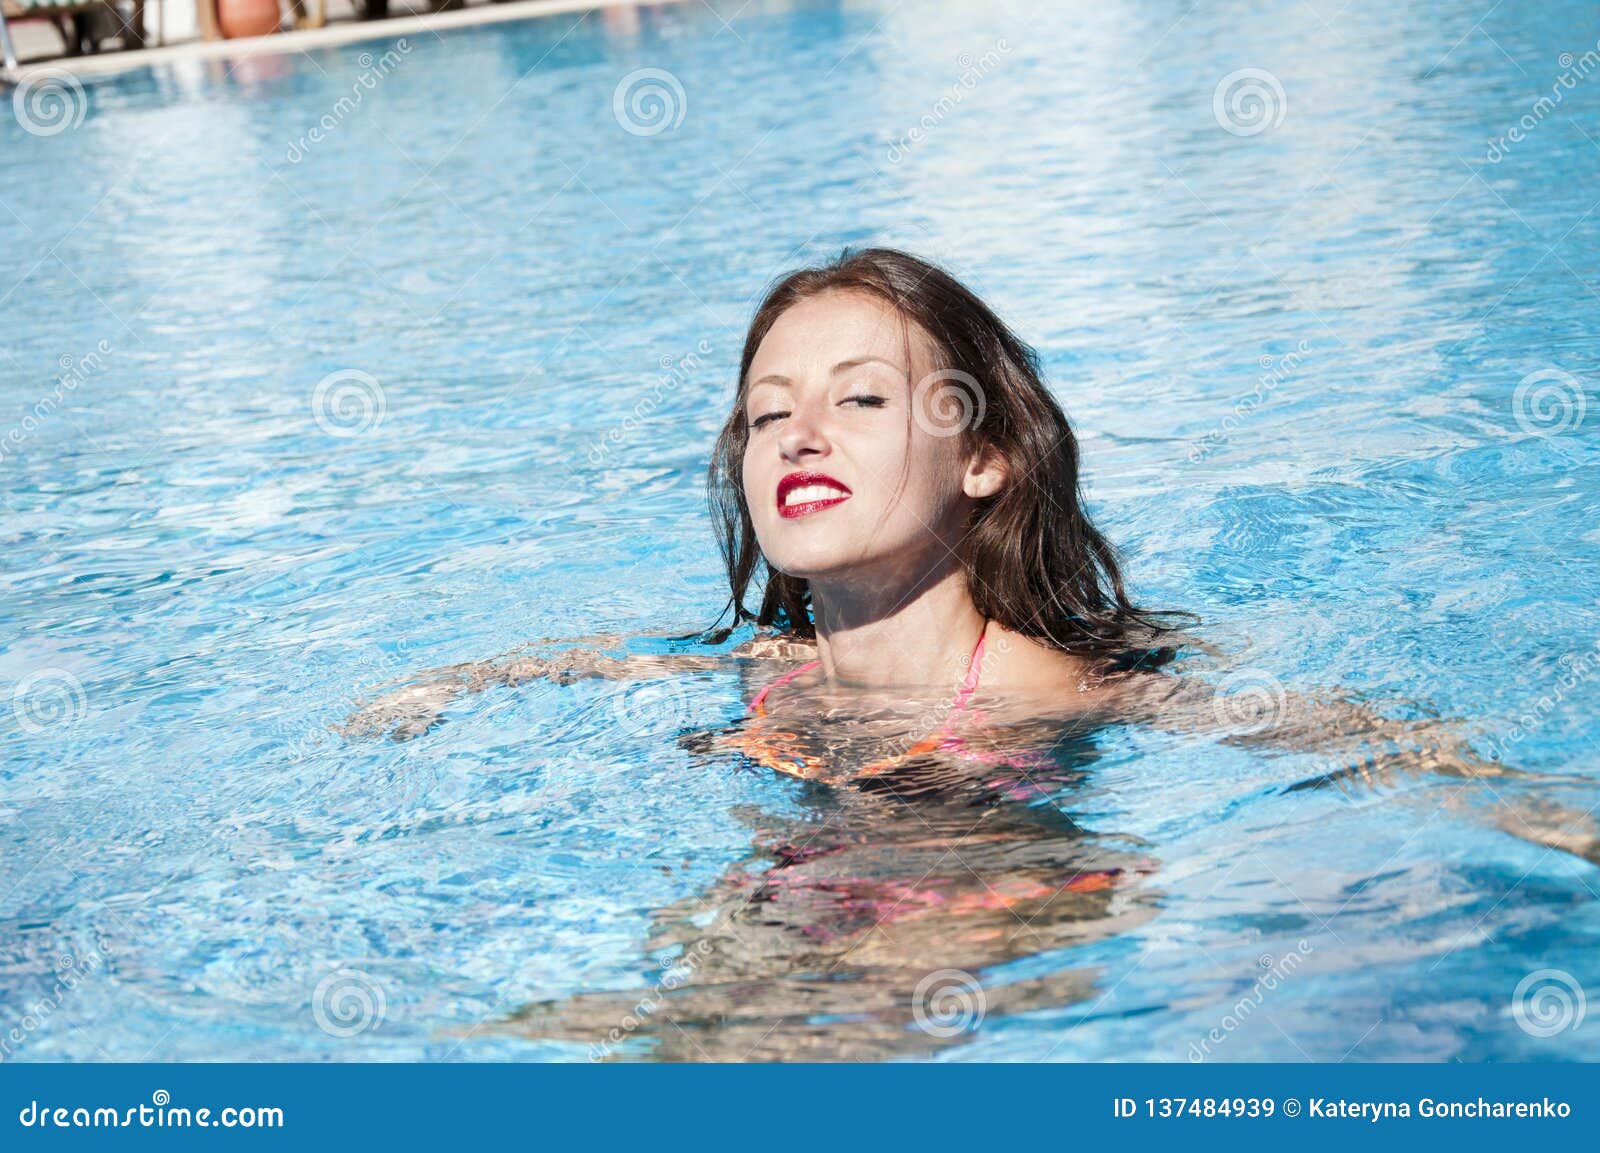 Sommerurlaub und Reisen zu Malediven Miami Beach ist sonnig Swag Karibischer Ozean Dope Pool-Spa Mädchen mit roten Lippen und nassen Haaren Frau im Schwimmbecken Frauen schwimmen am Strand, in der Natur